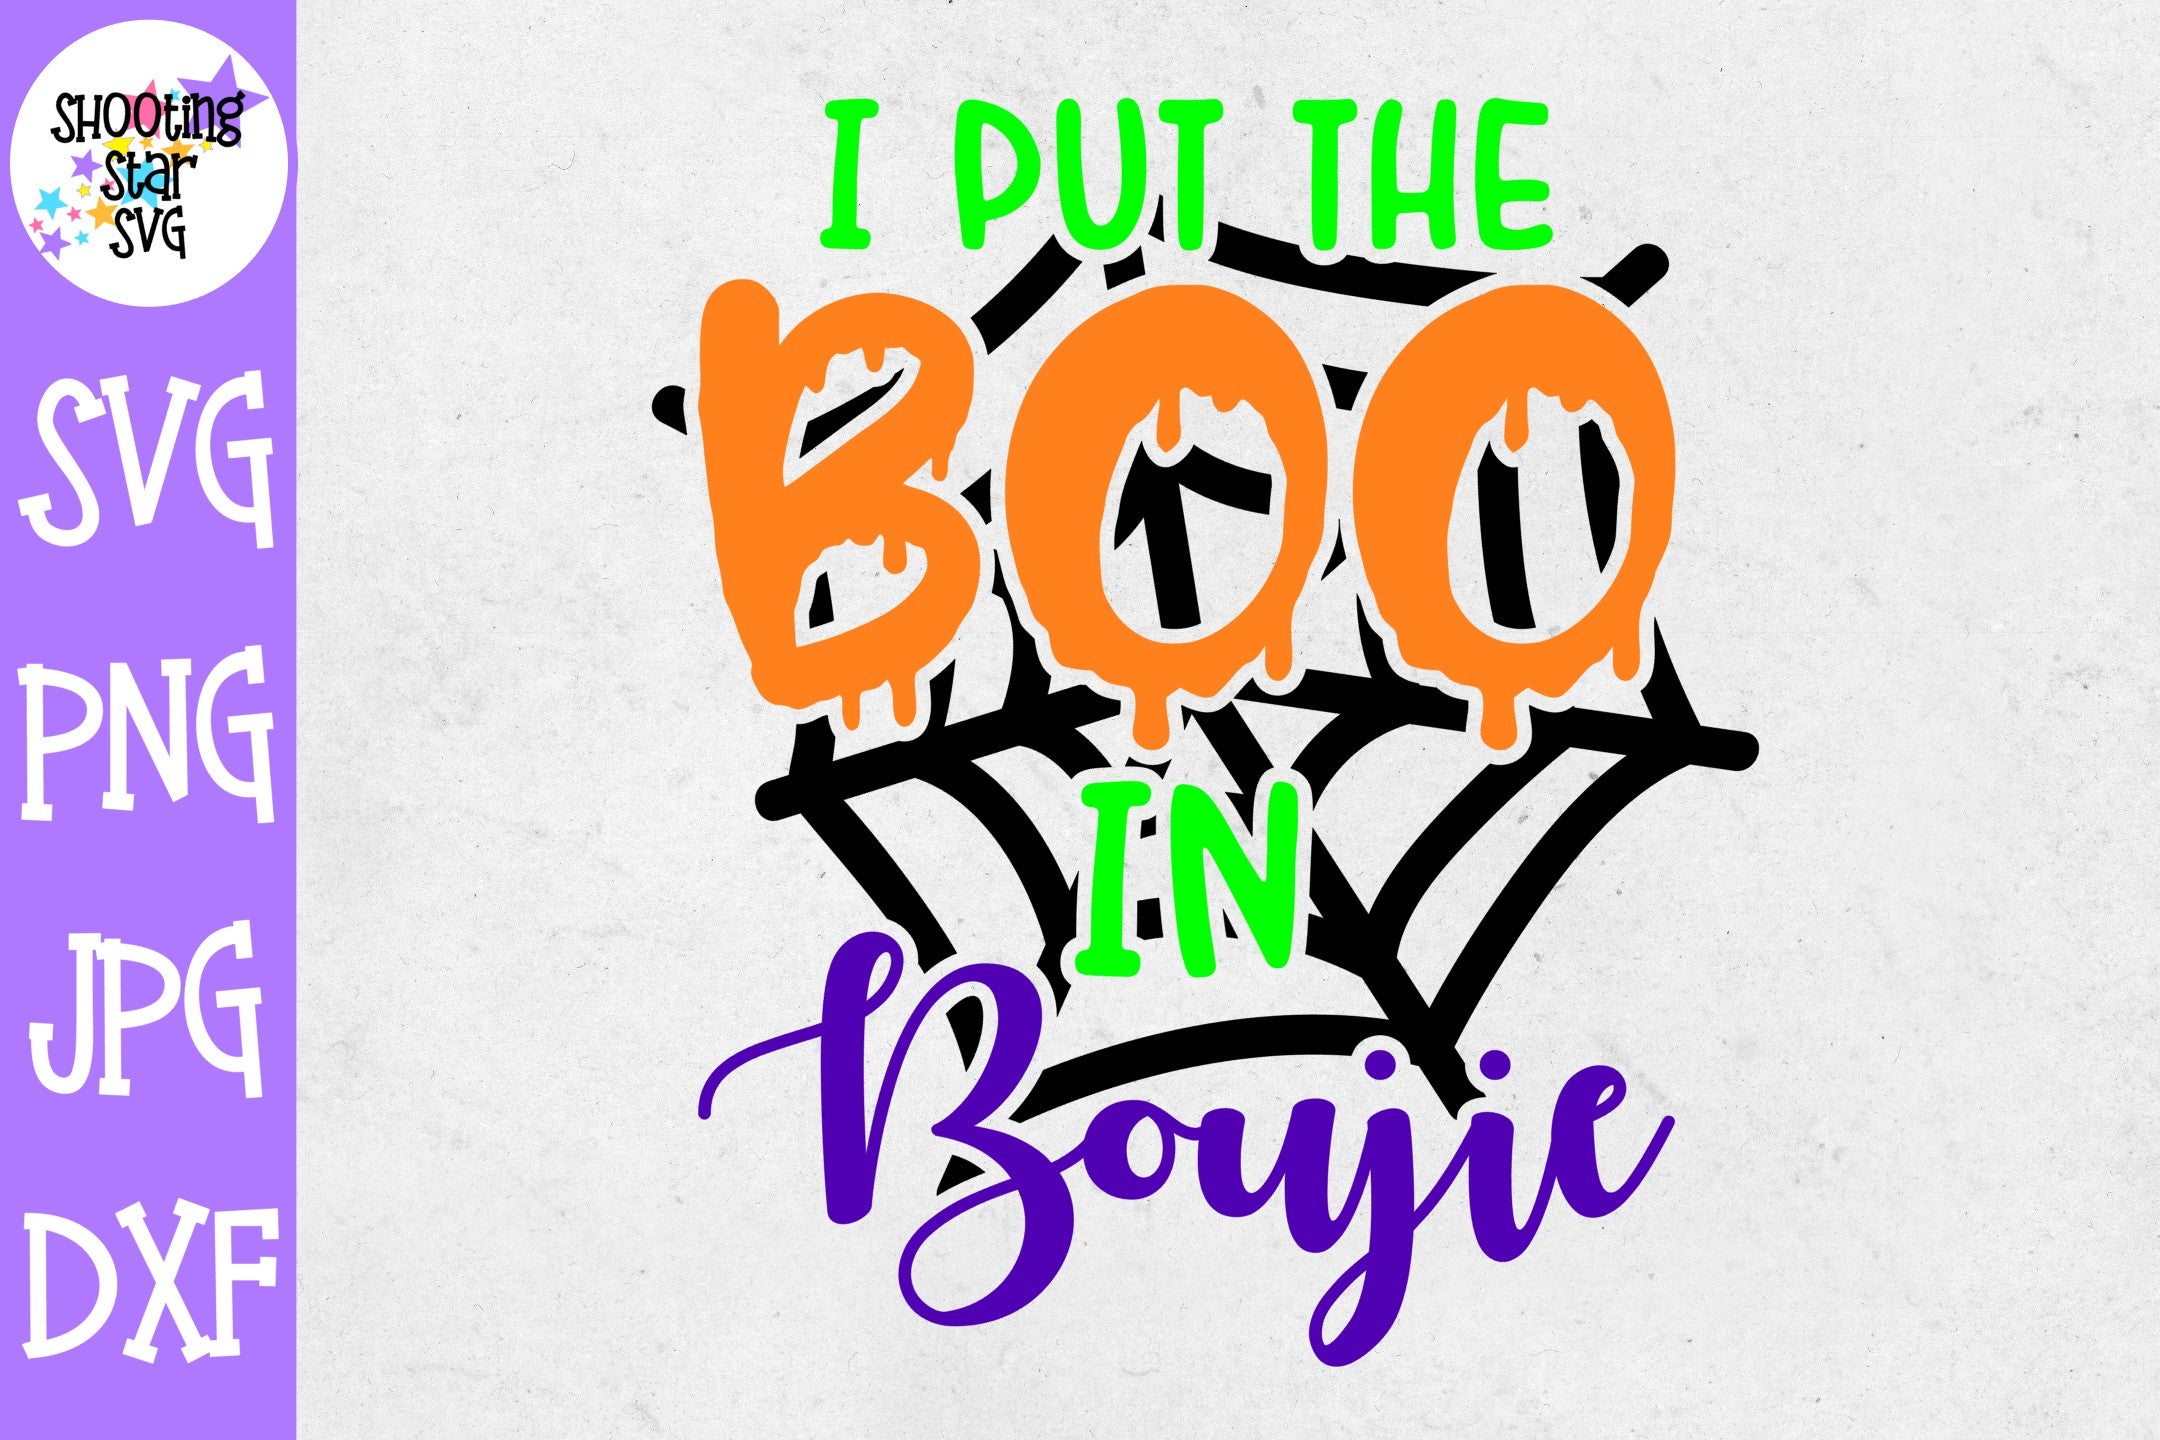 Boo in Bougie SVG - Boo in Boujee SVG - Boo in Boujie SVG